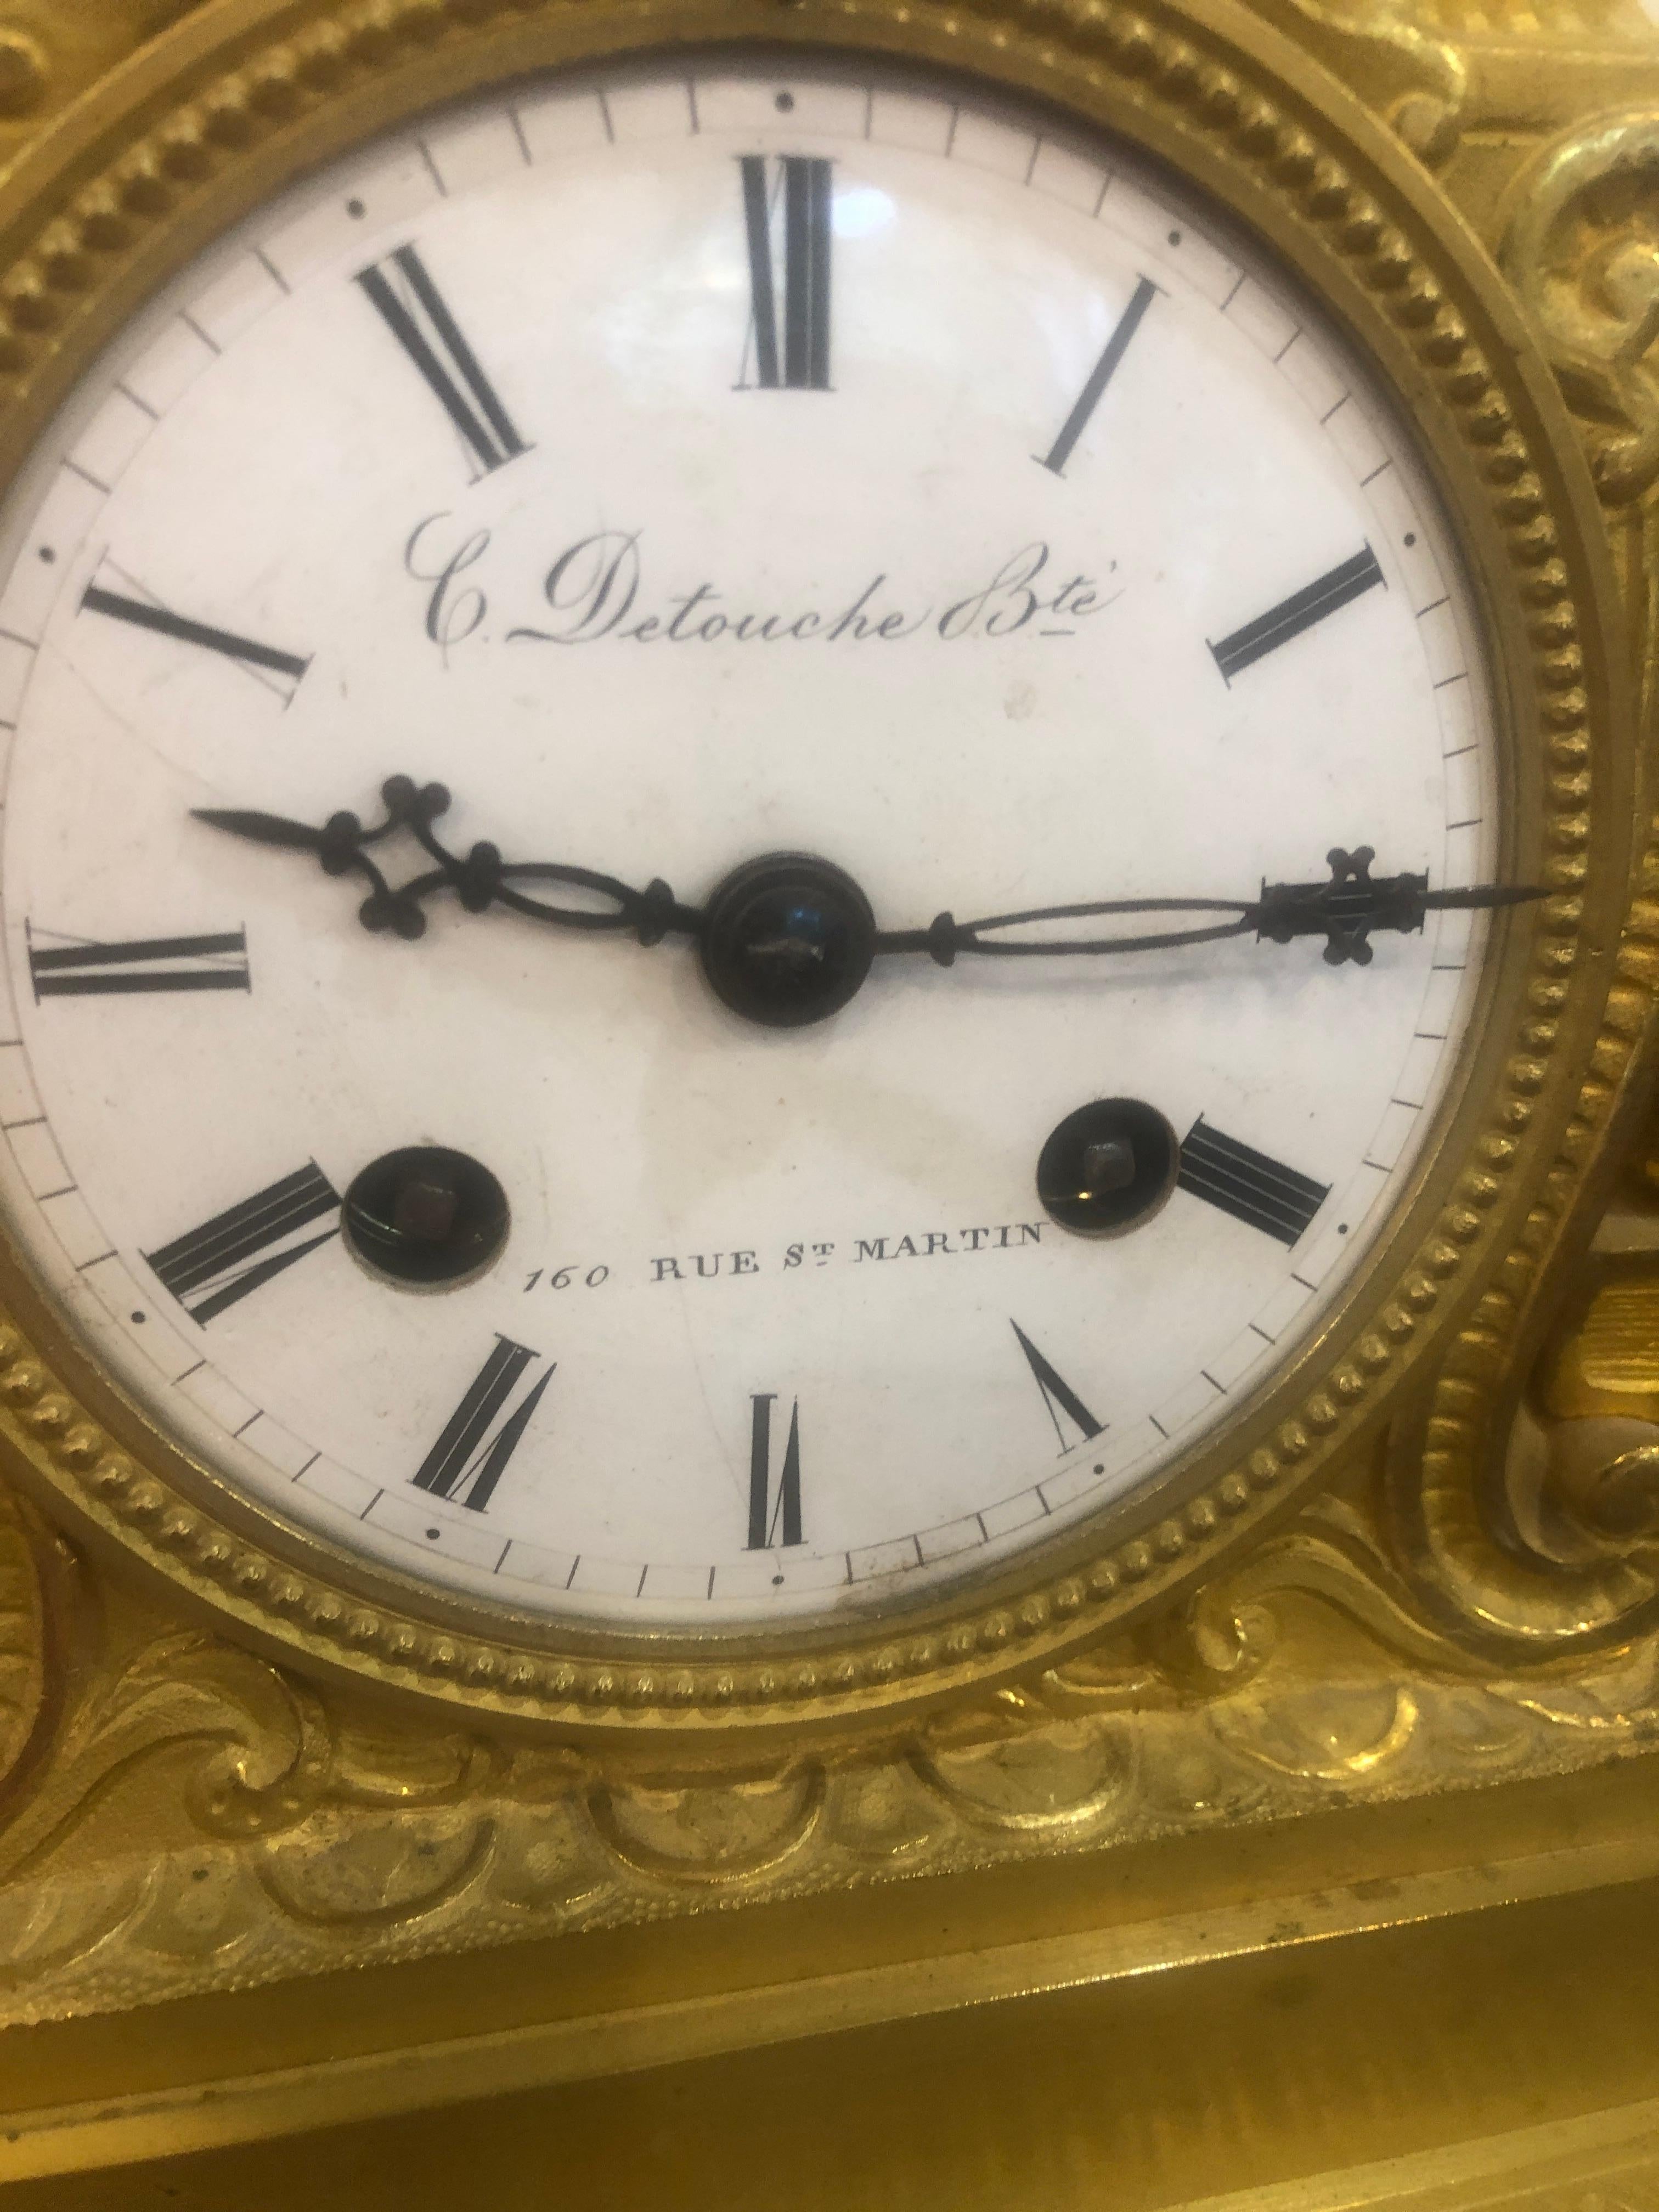 Fantastische und wichtige Kaminsimsuhr, signiert C. Detouche Bte, 160 Rue. St. Martin. Paris, Frankreich, ca. 1830-1835.

Constantin-Louis Detouche (1810-1889) wurde am 10. Oktober 1810 in Paris als Sohn des Uhrmachers Georges Detouche geboren. Er